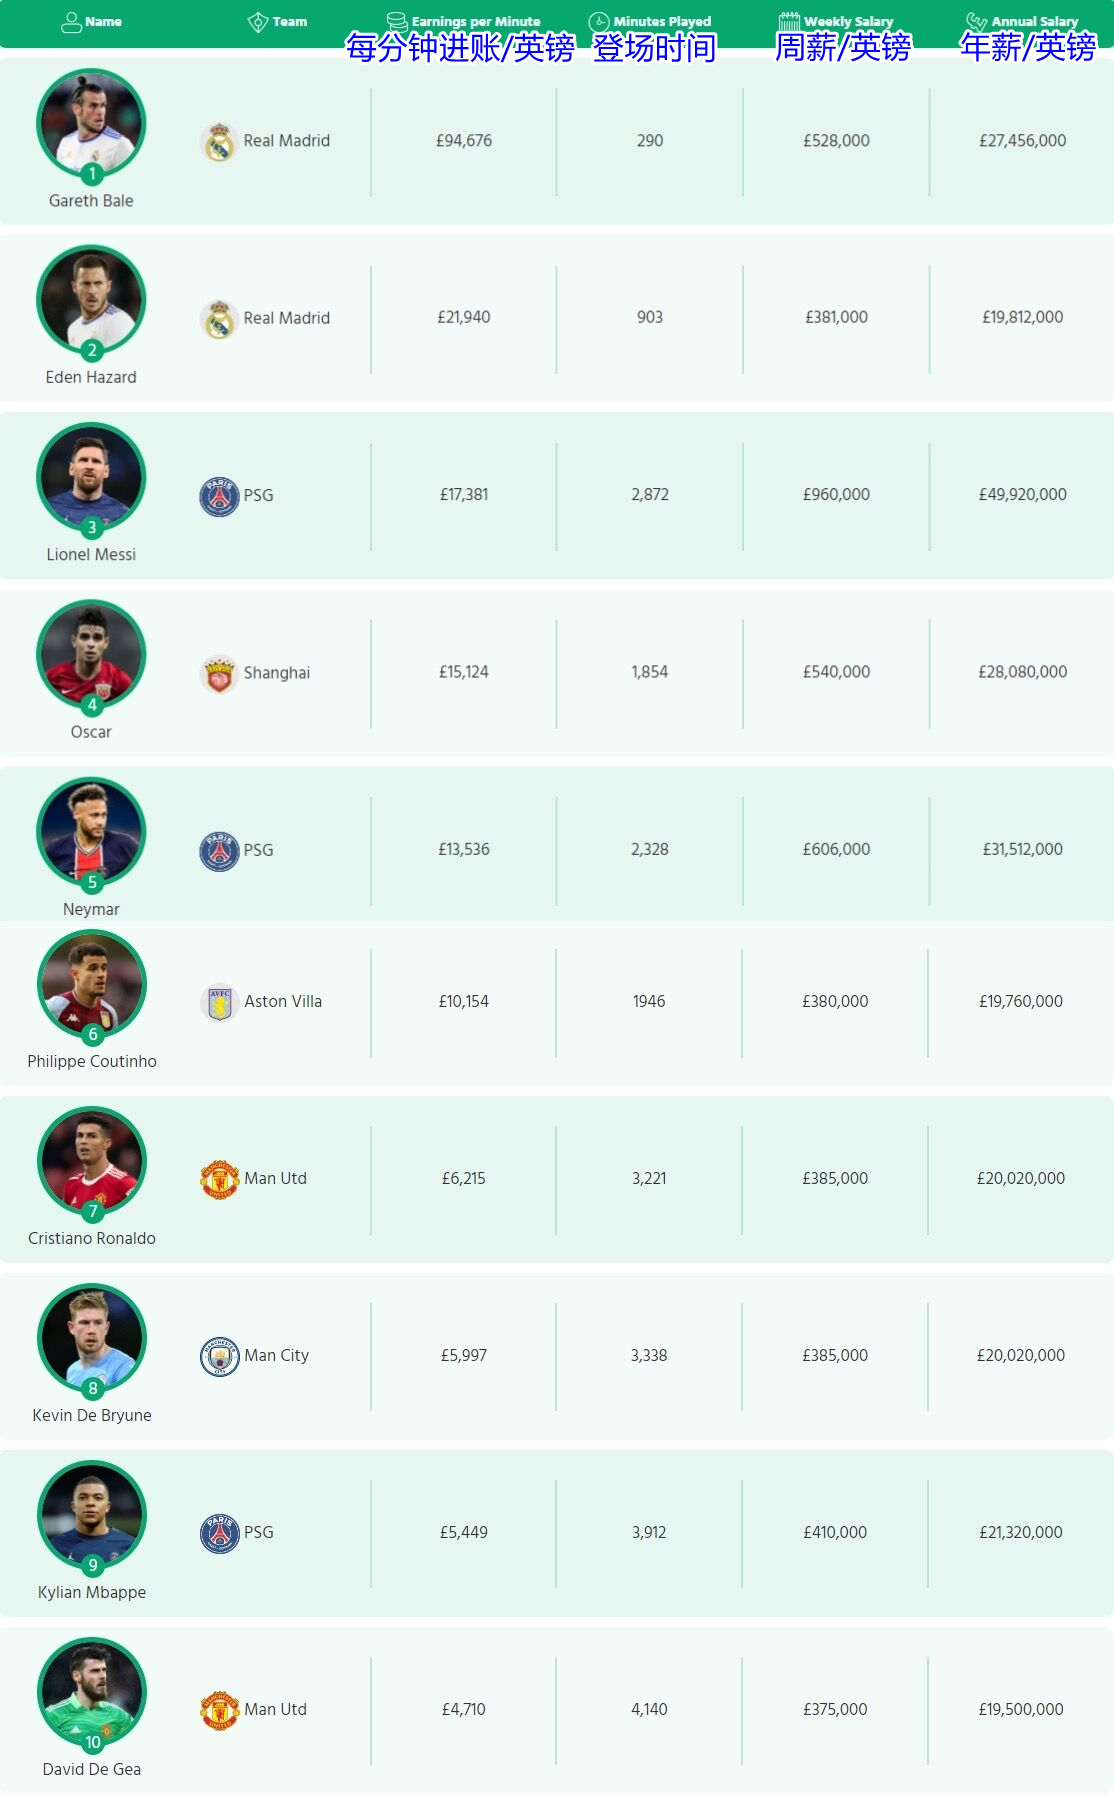 ?每分钟进账最多的球员是谁？贝尔94676镑、梅西17381镑